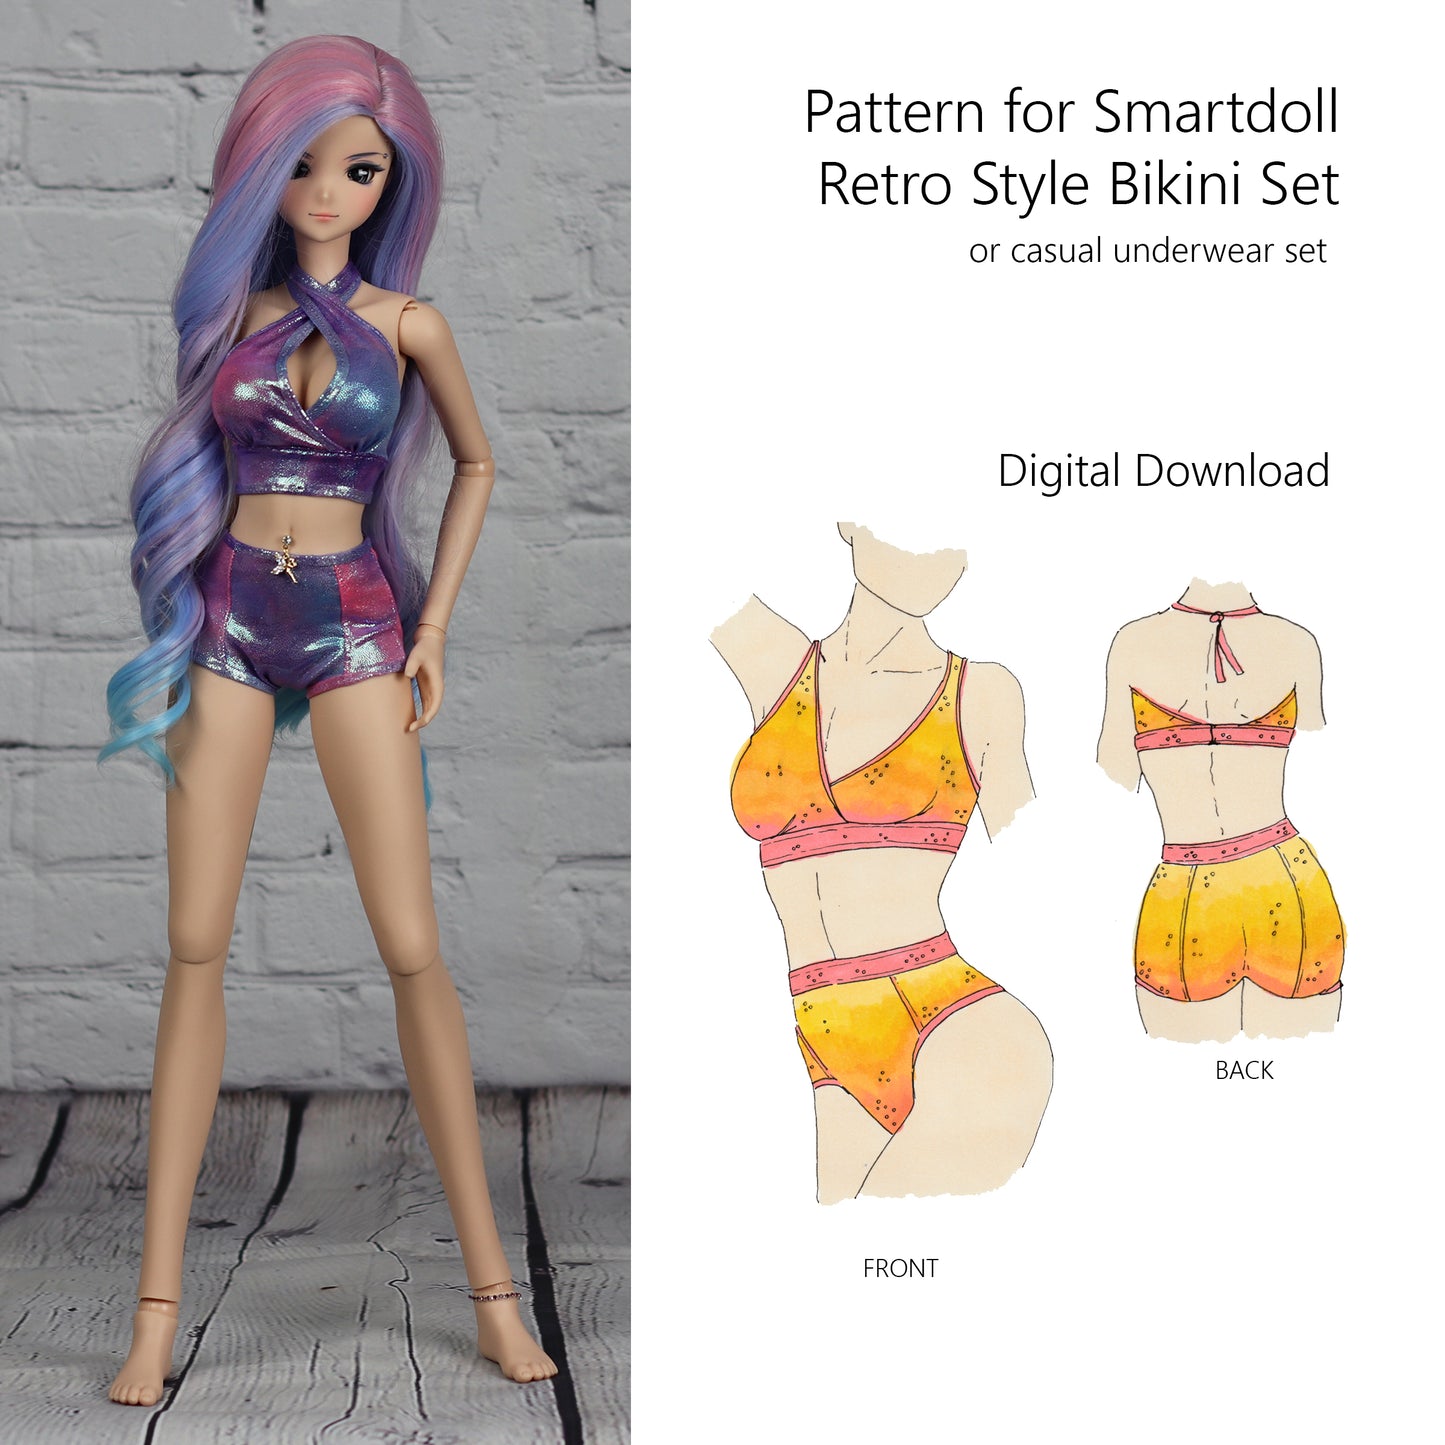 Pattern for Retro Bikini (or Casual Underwear) for Smart Doll